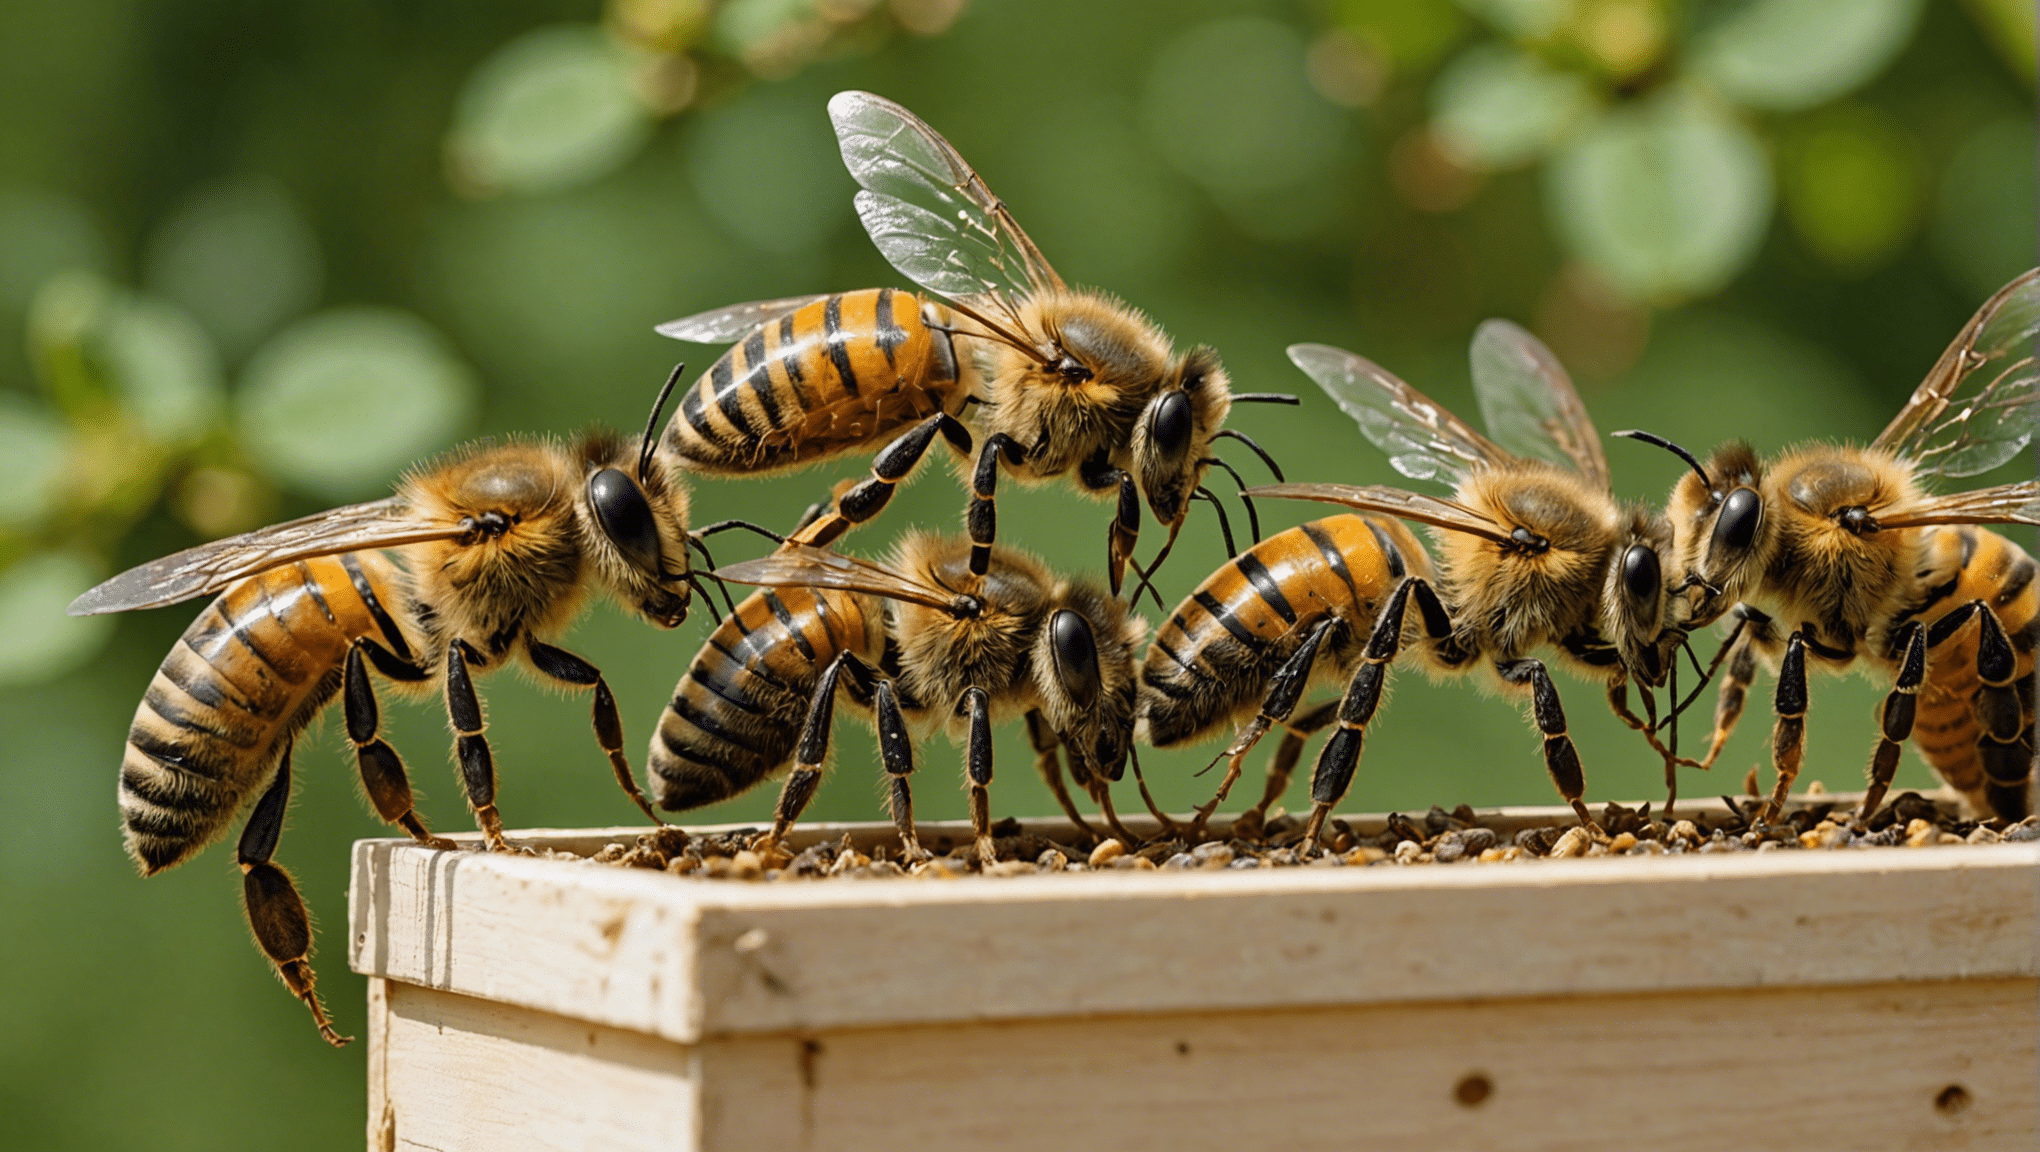 découvrez comment surmonter les défis actuels de l'apiculture grâce à nos conseils pratiques et innovants.